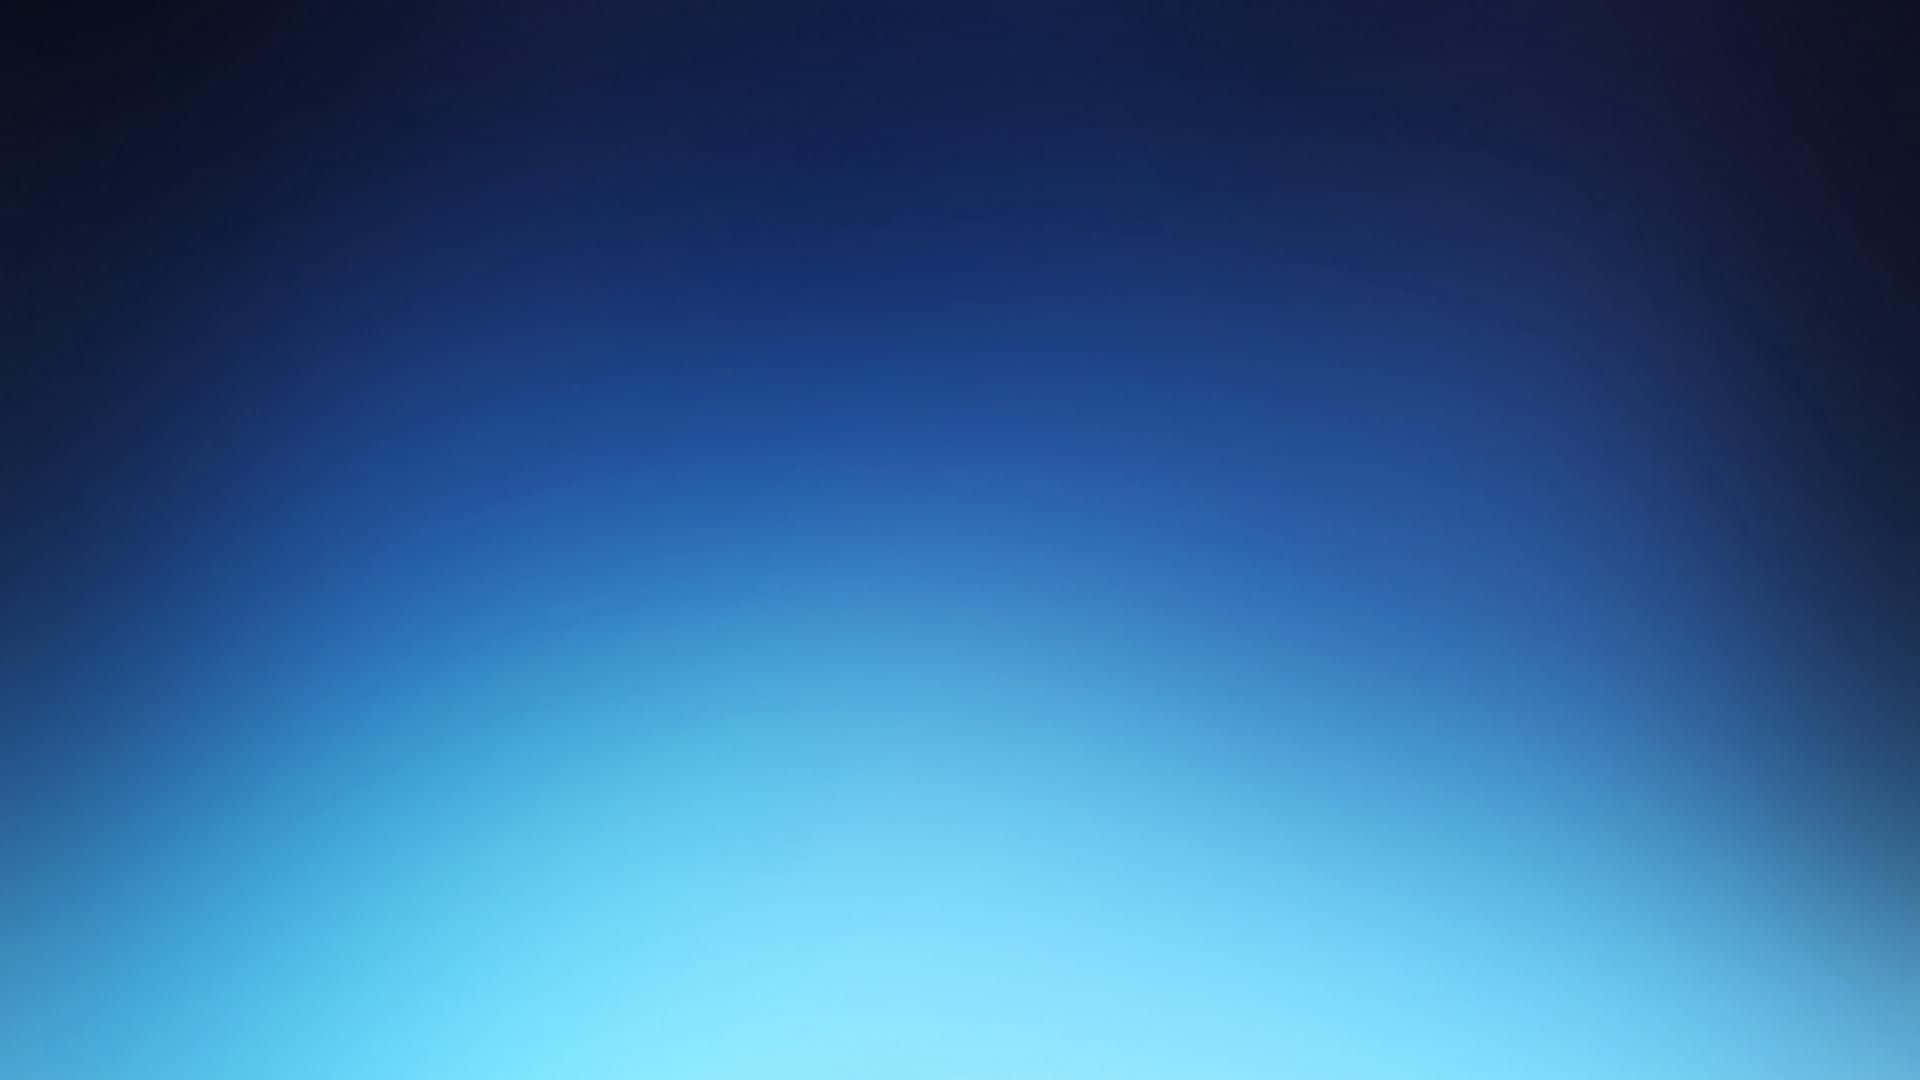 Glowing Minimalist Blue Gradient Background